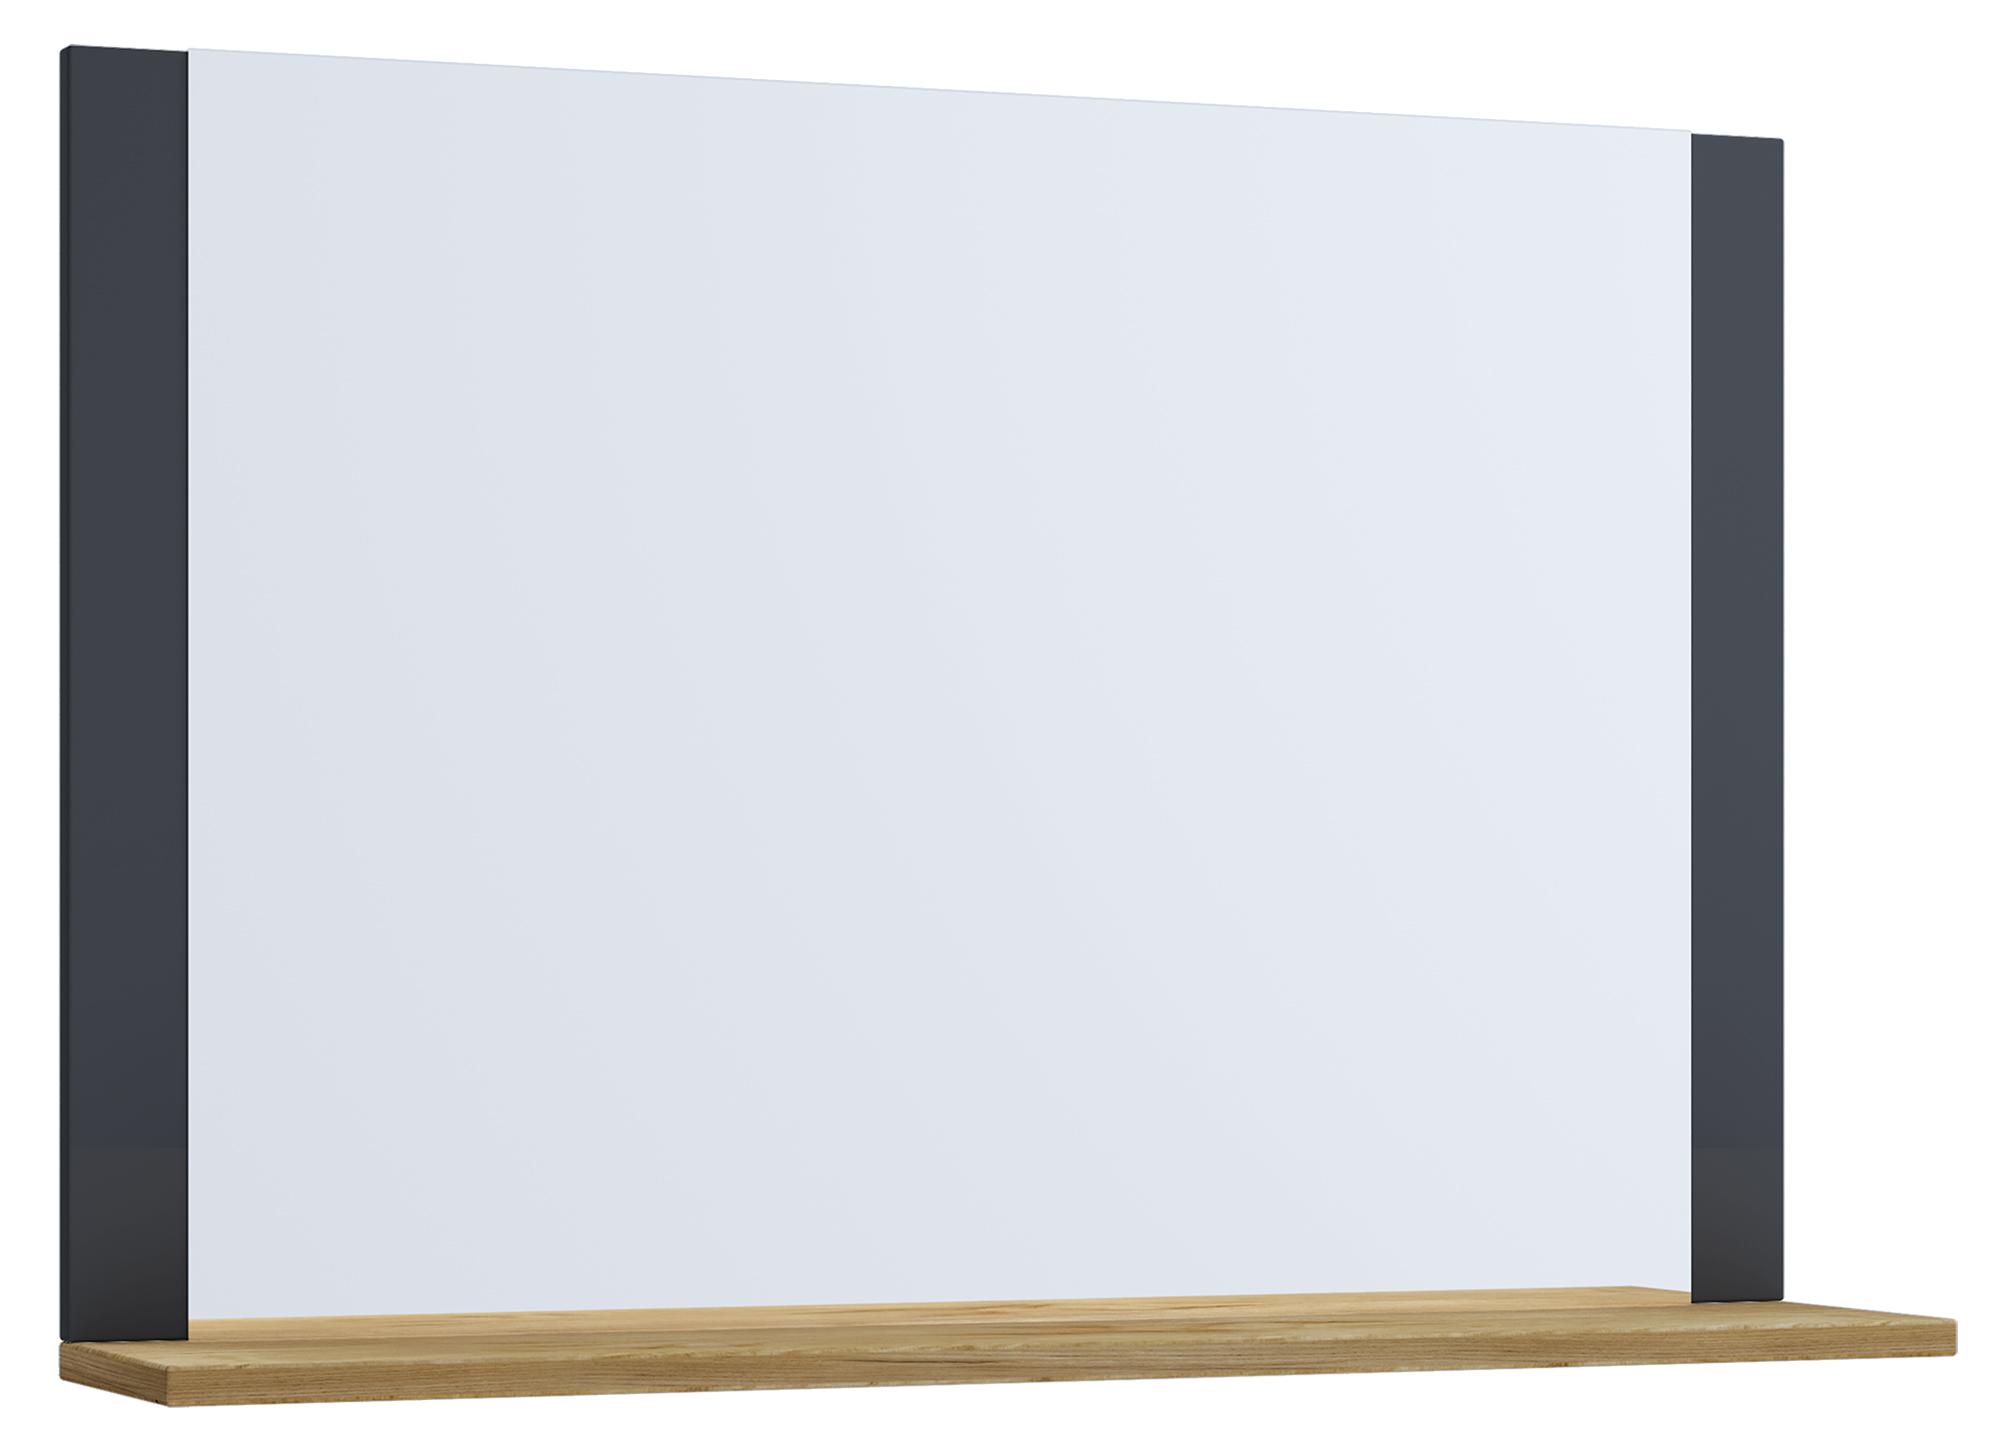 Badspiegel Vcb10 BxH: 80x65 cm mit Ablage Eiche Dekor - Eichefarben/Anthrazit, Basics, Holzwerkstoff (80/65/17cm) - MID.YOU